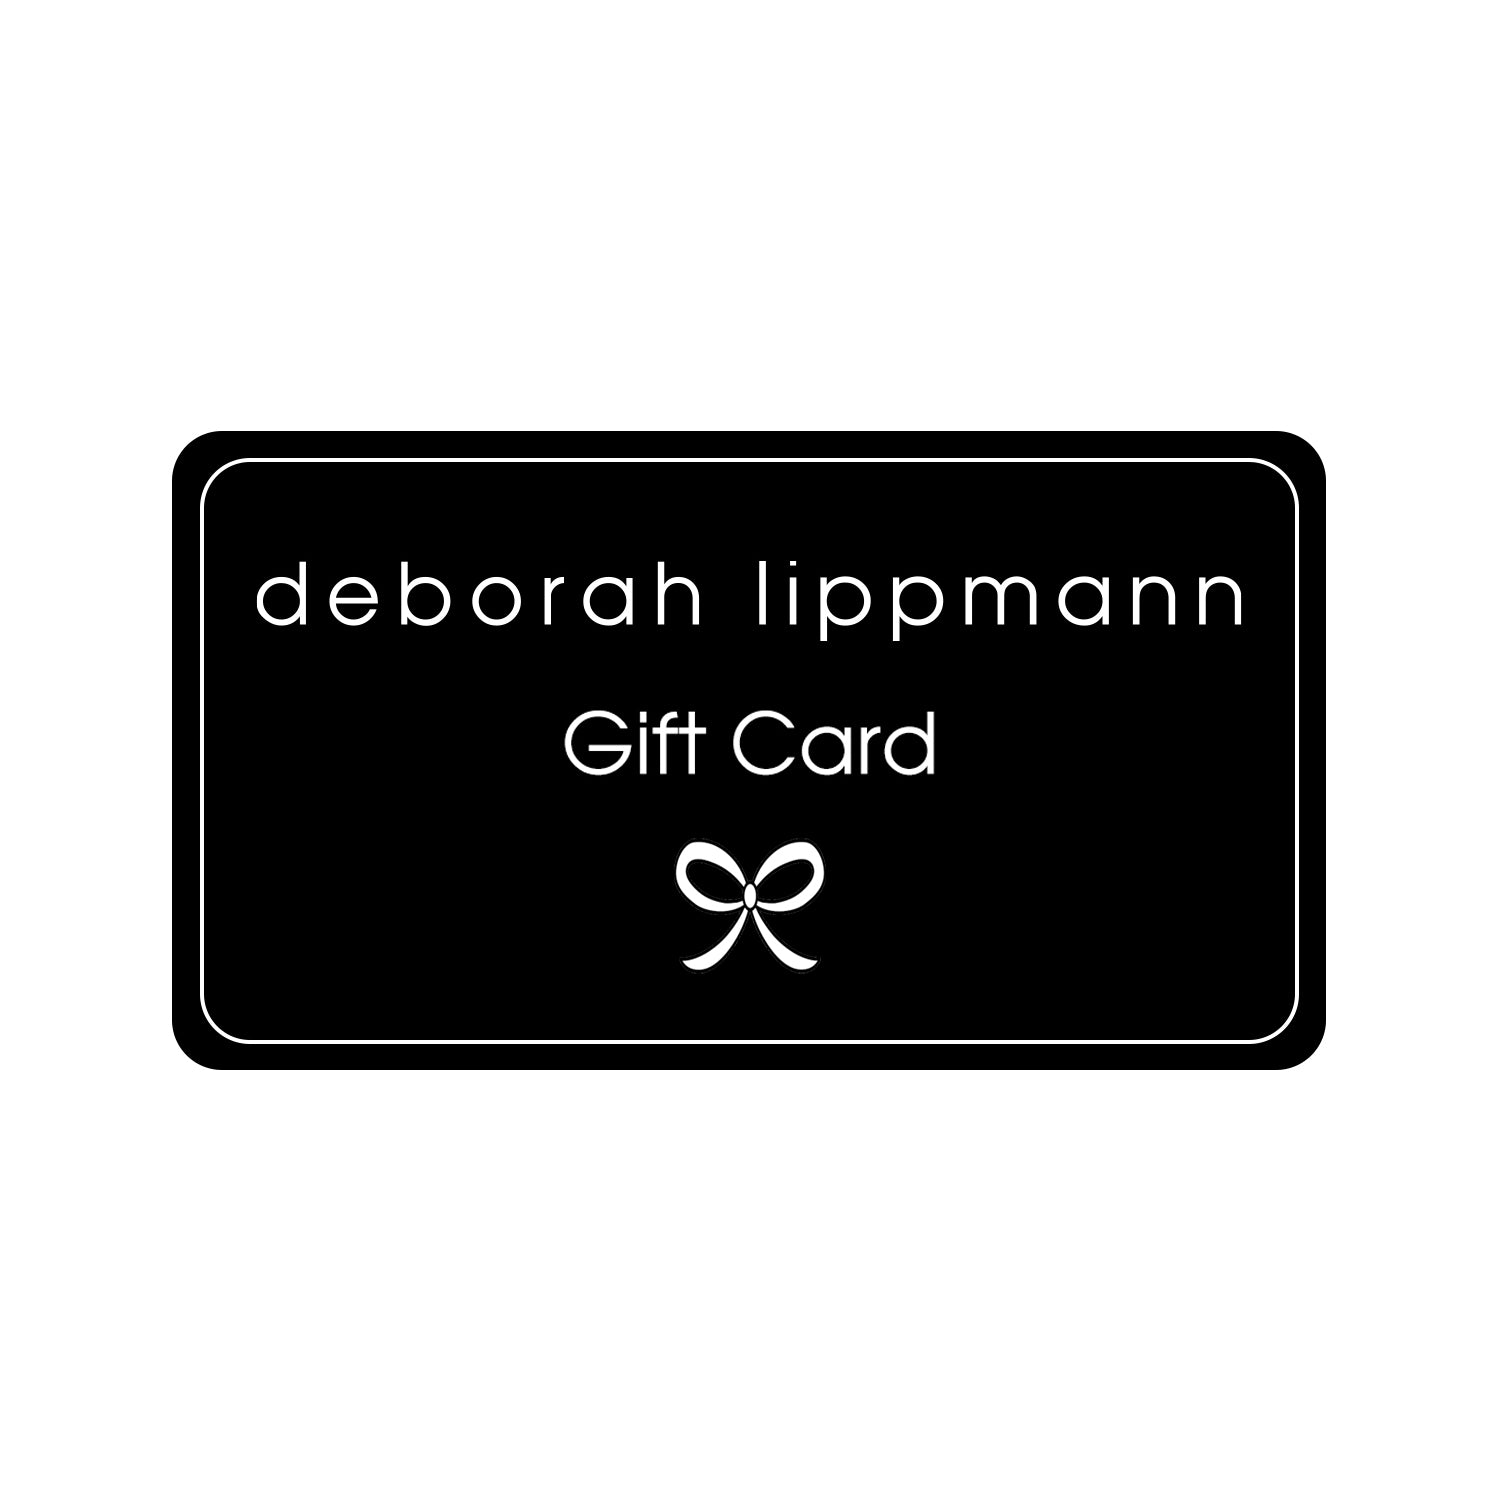 Gift Card - Deborah Lippmann